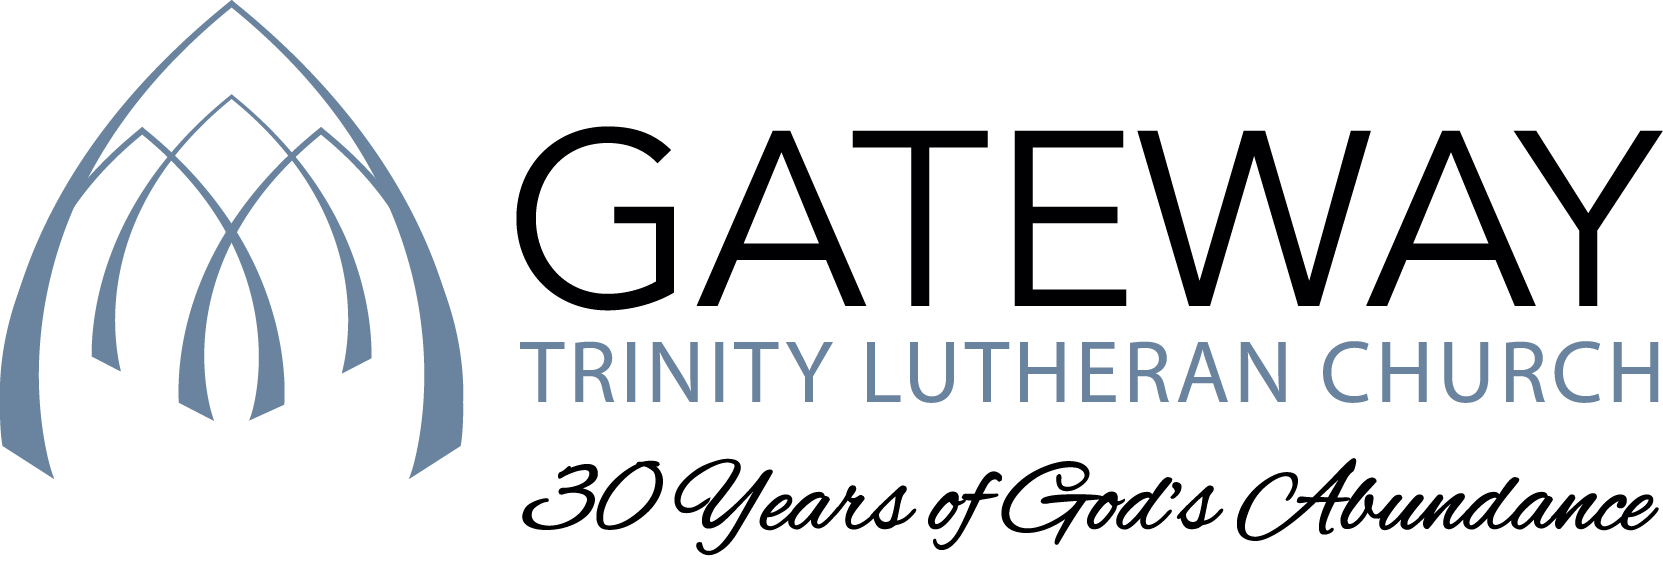 Gateway Trinity Lutheran Church